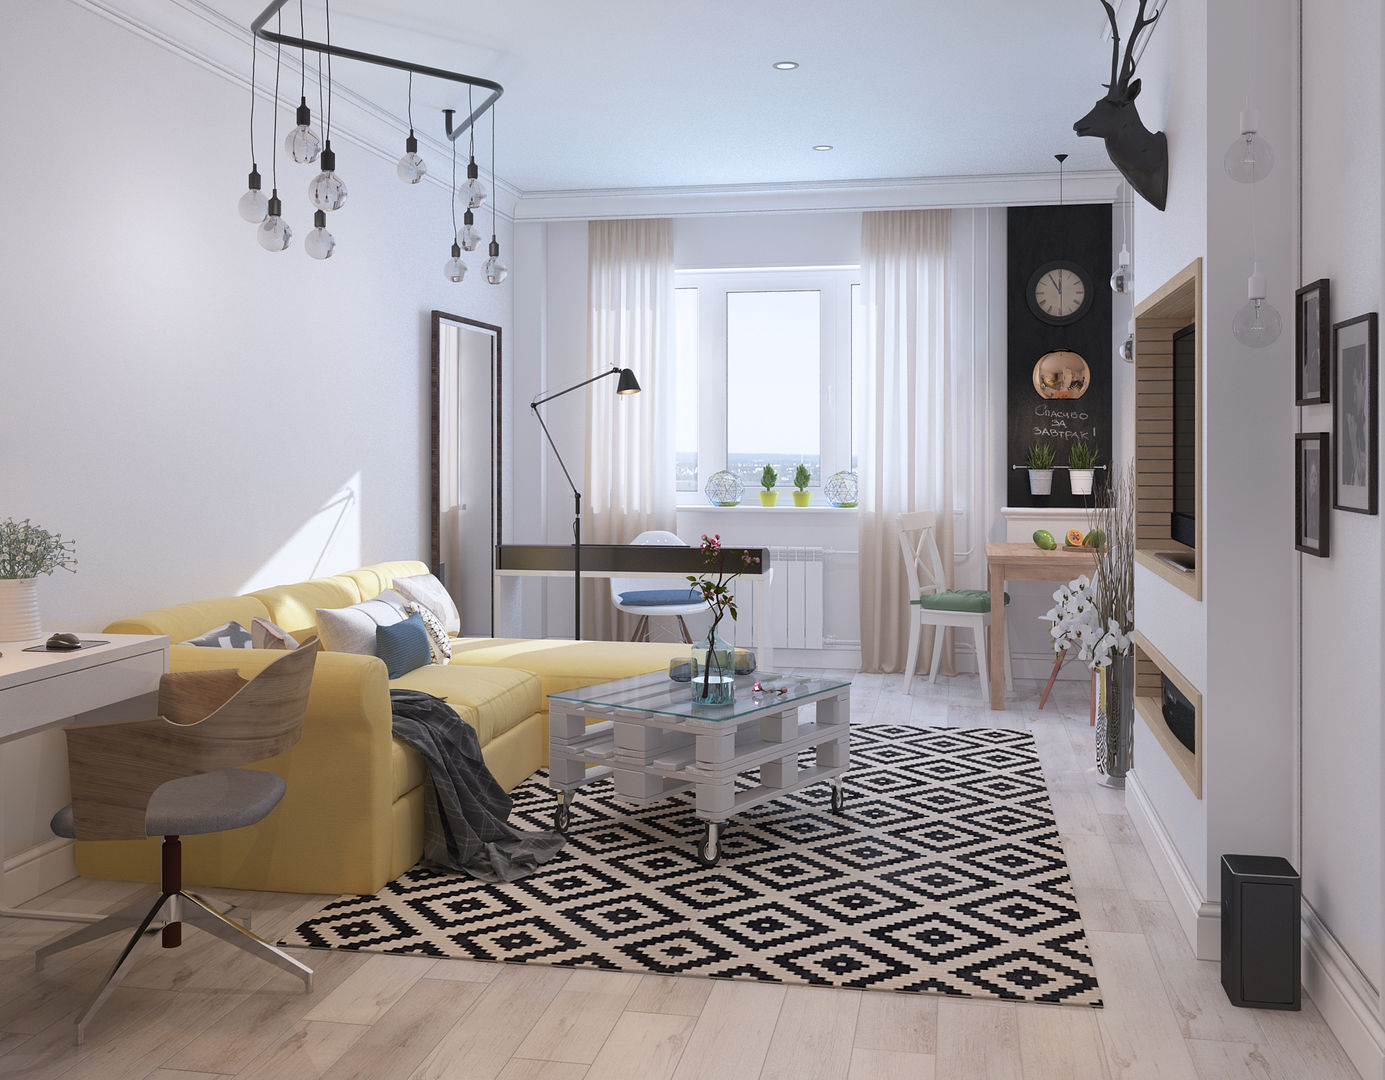 Визуализации Интерьера в скандинавском стиле, Alyona Musina Alyona Musina Scandinavian style living room